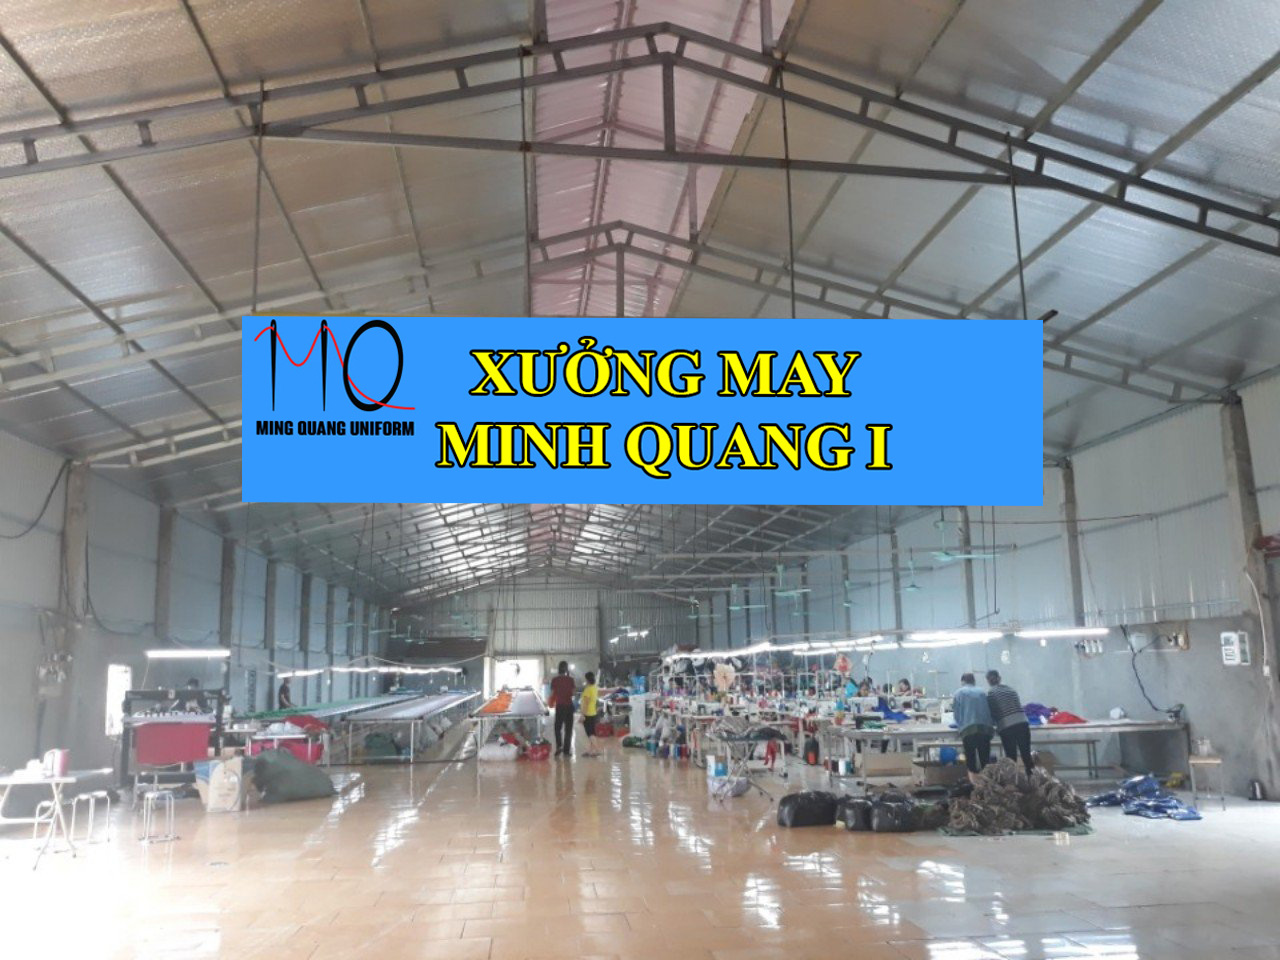 Xưởng may Minh Quang